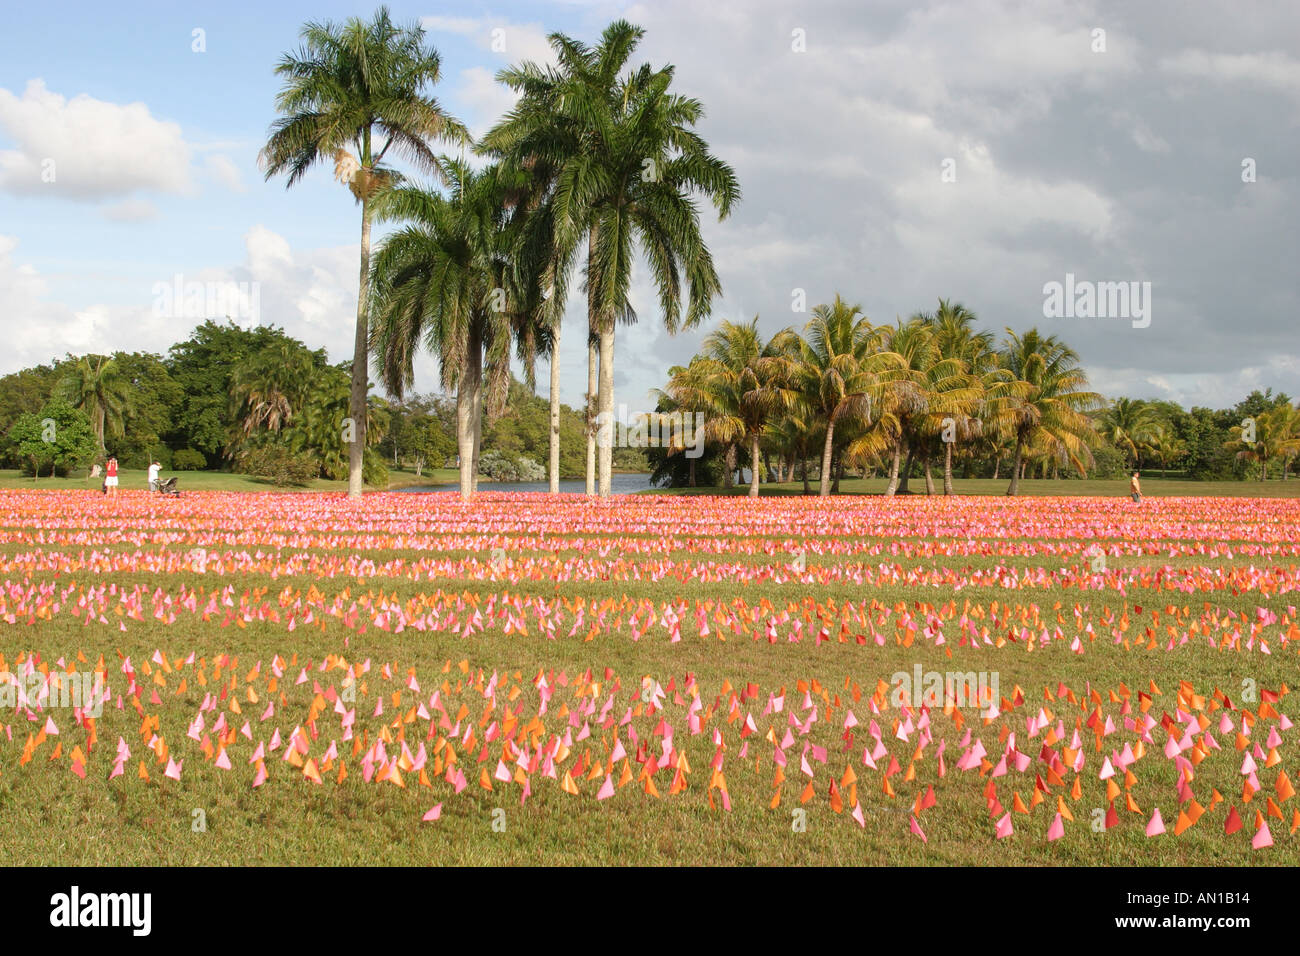 Miami Florida,Coral Gables,Fairchild Tropical Garden,Flower Square art installation par Patricia Van Dalen du Venezuela,10,000 vinyle marqueur Fla Banque D'Images